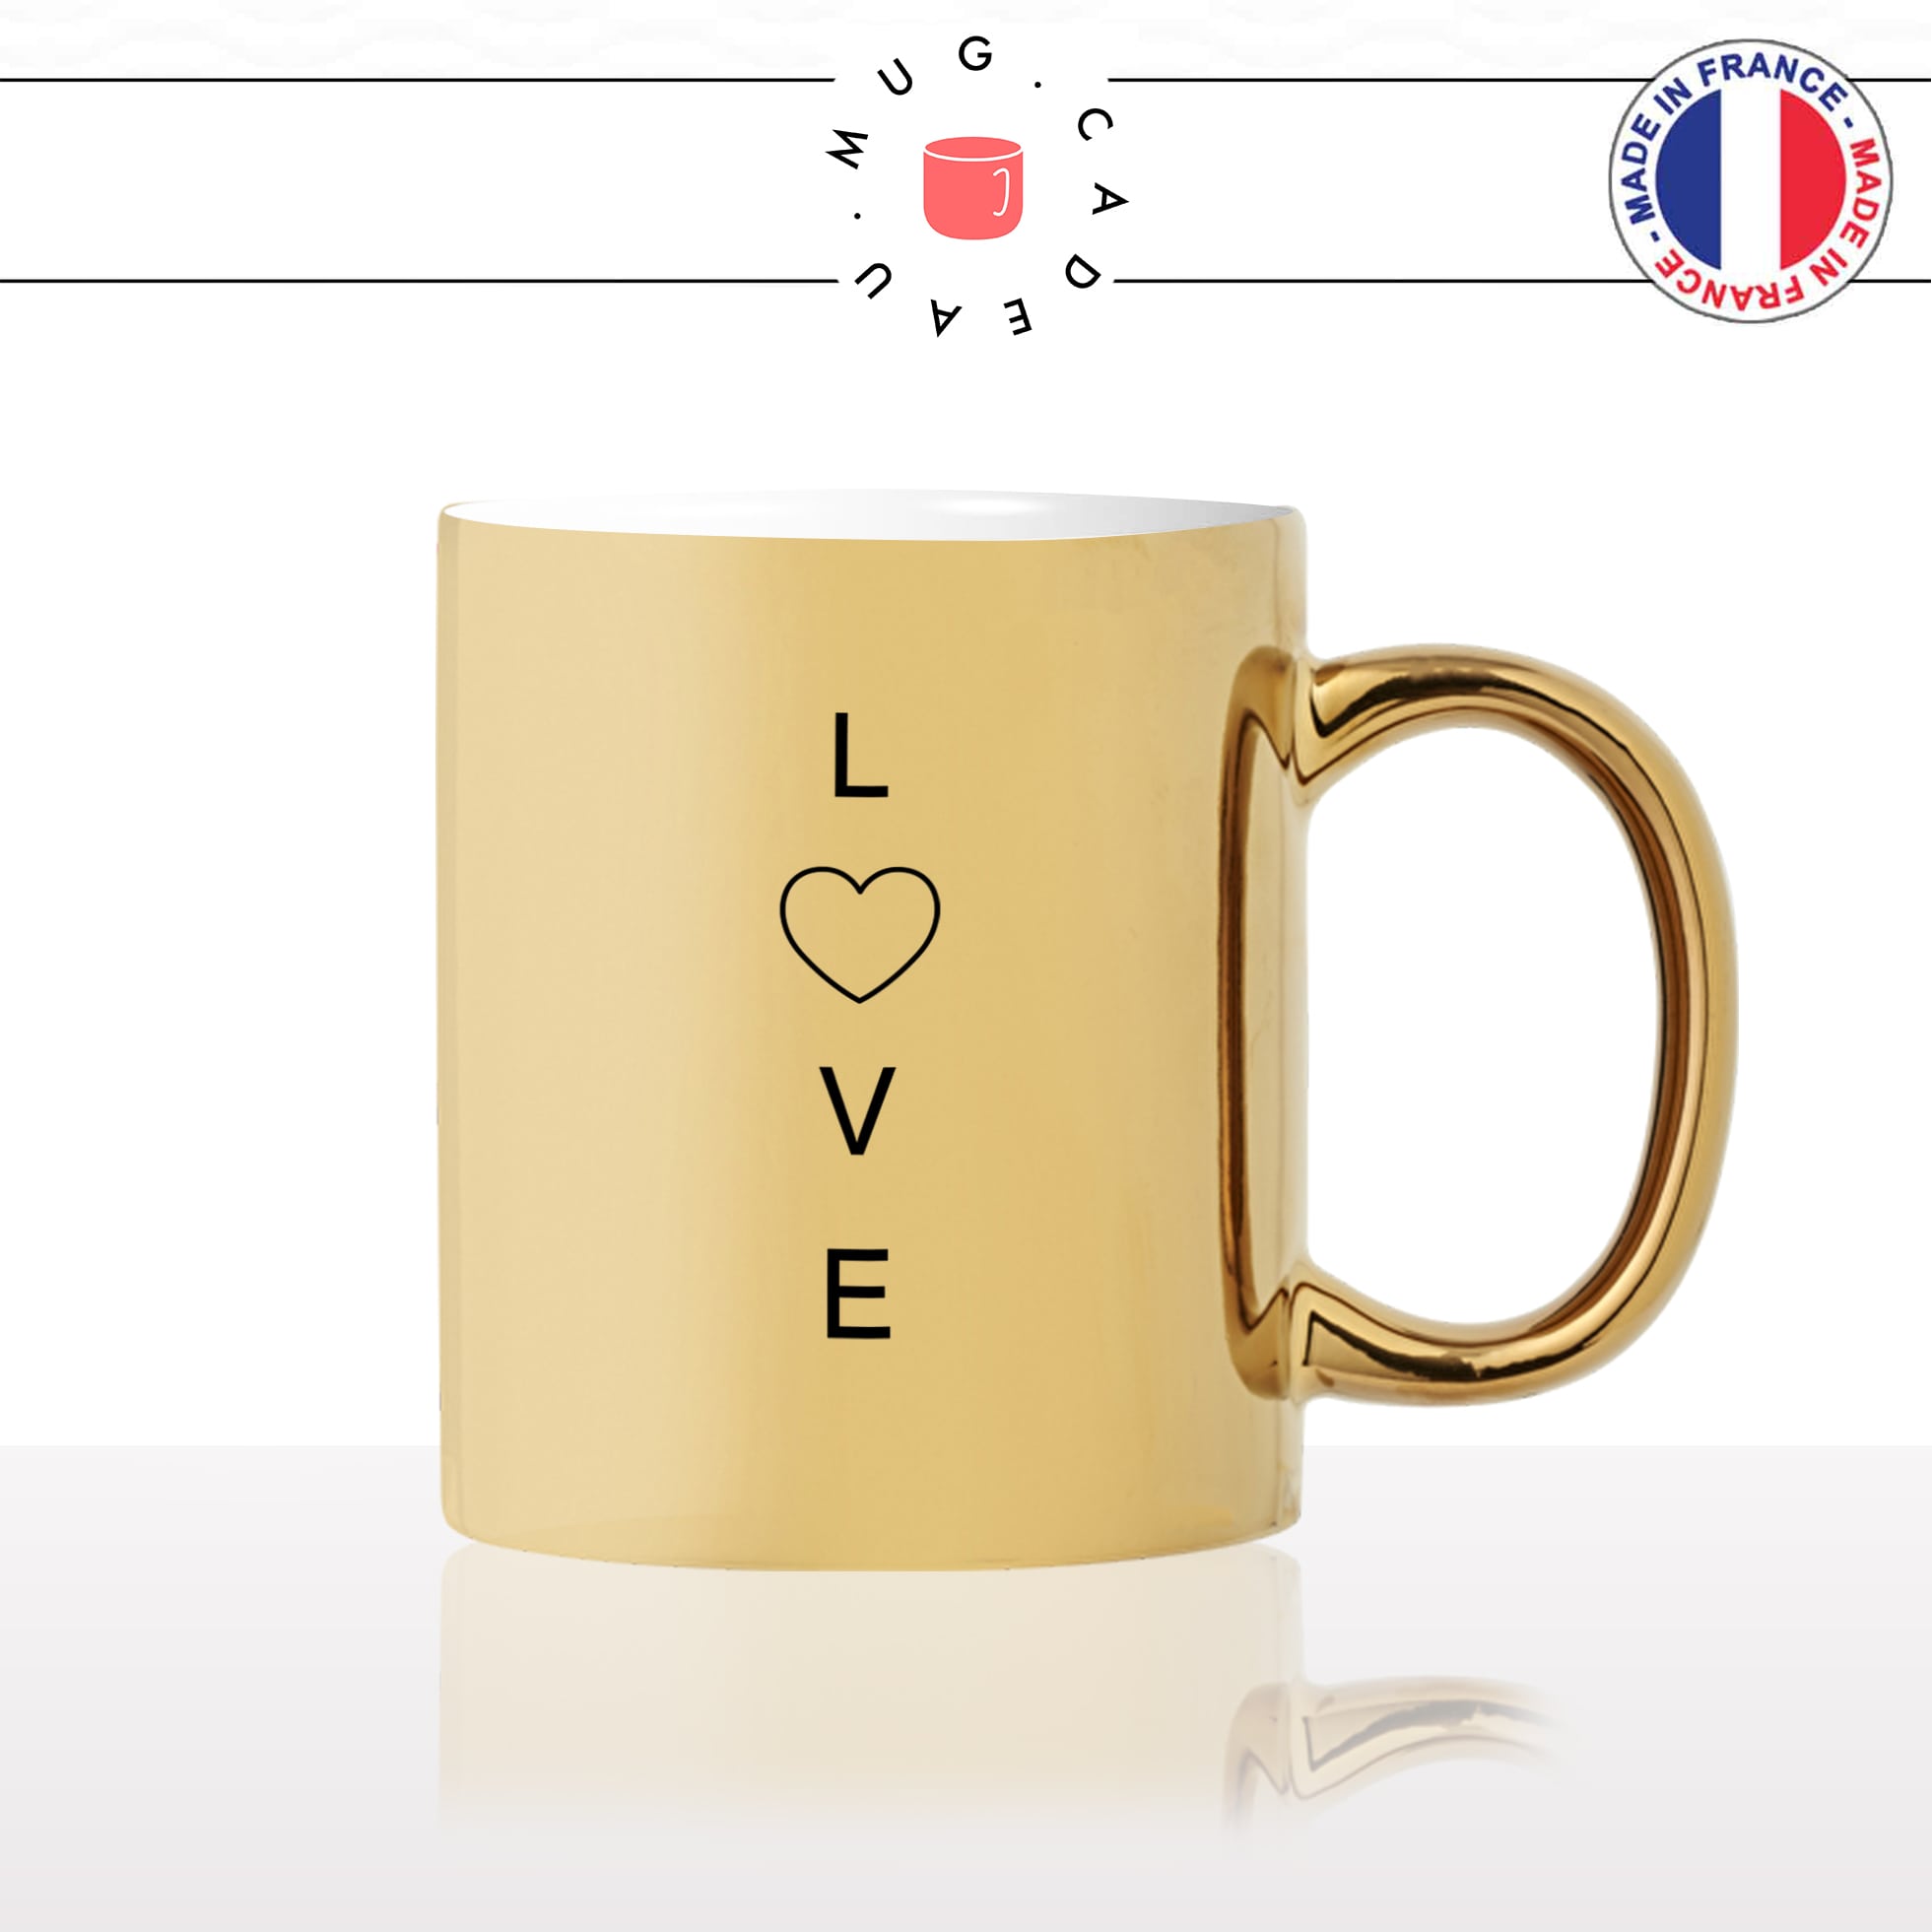 mug-tasse-or-doré-love-coeur-amoureux-couple-st-valentin-amour-fun-café-thé-idée-cadeau-original-personnalisable-gold2-min